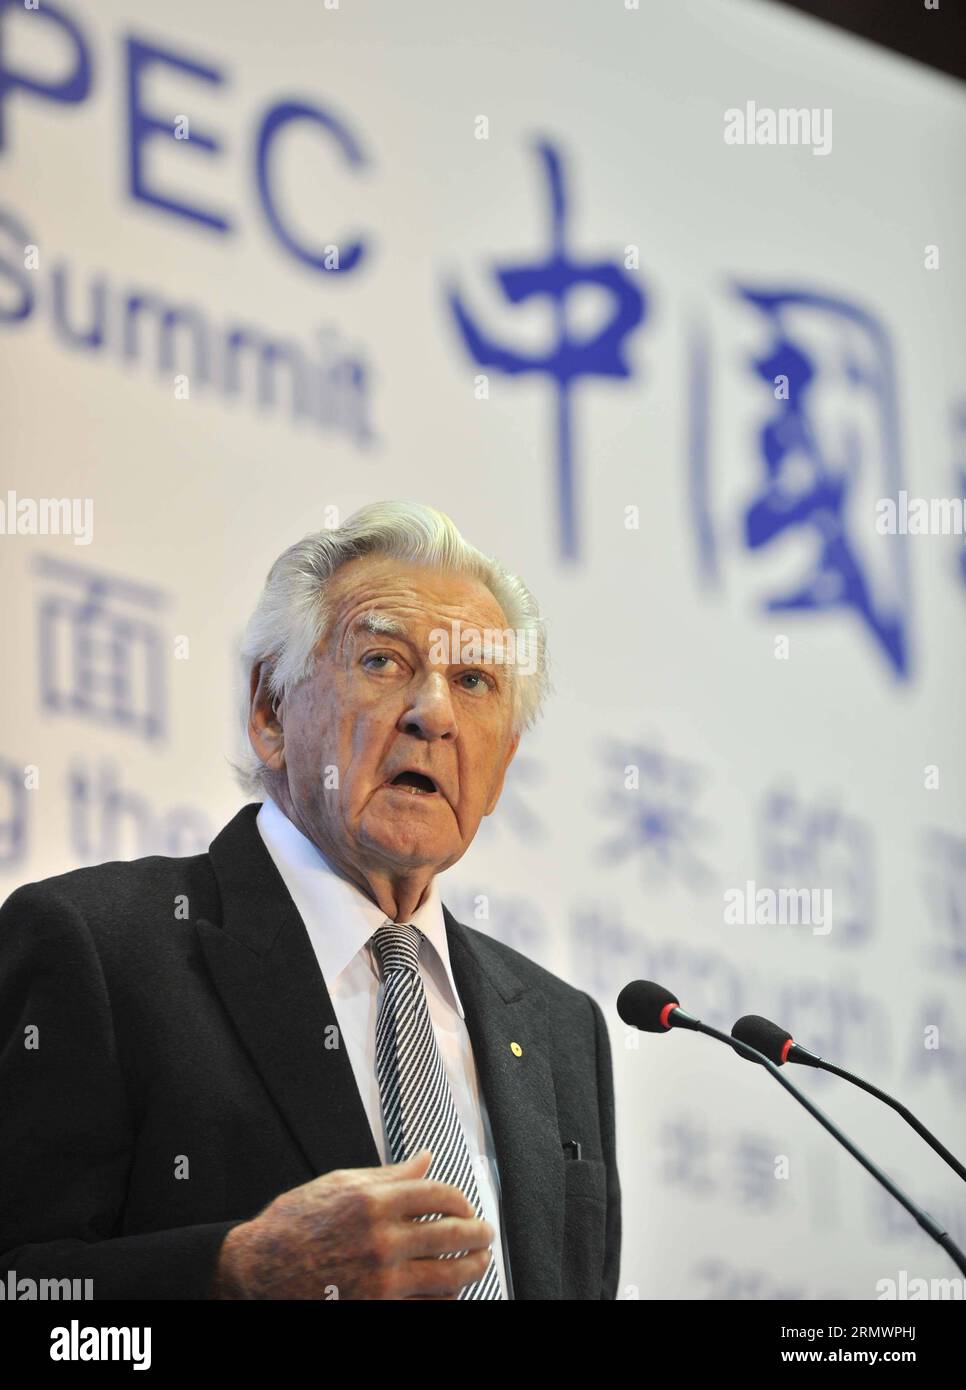 CORRECTING DATE (141108) - PECHINO, l'ex primo ministro australiano Bob Hawke, che è stato il primo a presentare pubblicamente l'idea dell'APEC nel 1989, parla durante il forum del vertice APEC China Day 2014 a Pechino, Cina, 7 novembre 2014. La settimana dei leader economici della cooperazione economica Asia-Pacifico (APEC) 2014 si terrà a Pechino dal 5 all'11 novembre. )(HDT) (CORREZIONE) (APEC 2014) CHINA-BEIJING-APEC-FORUM-BOB HAWKE (CN) LIXWEN PUBLICATIONXNOTXINXCHN Foto Stock